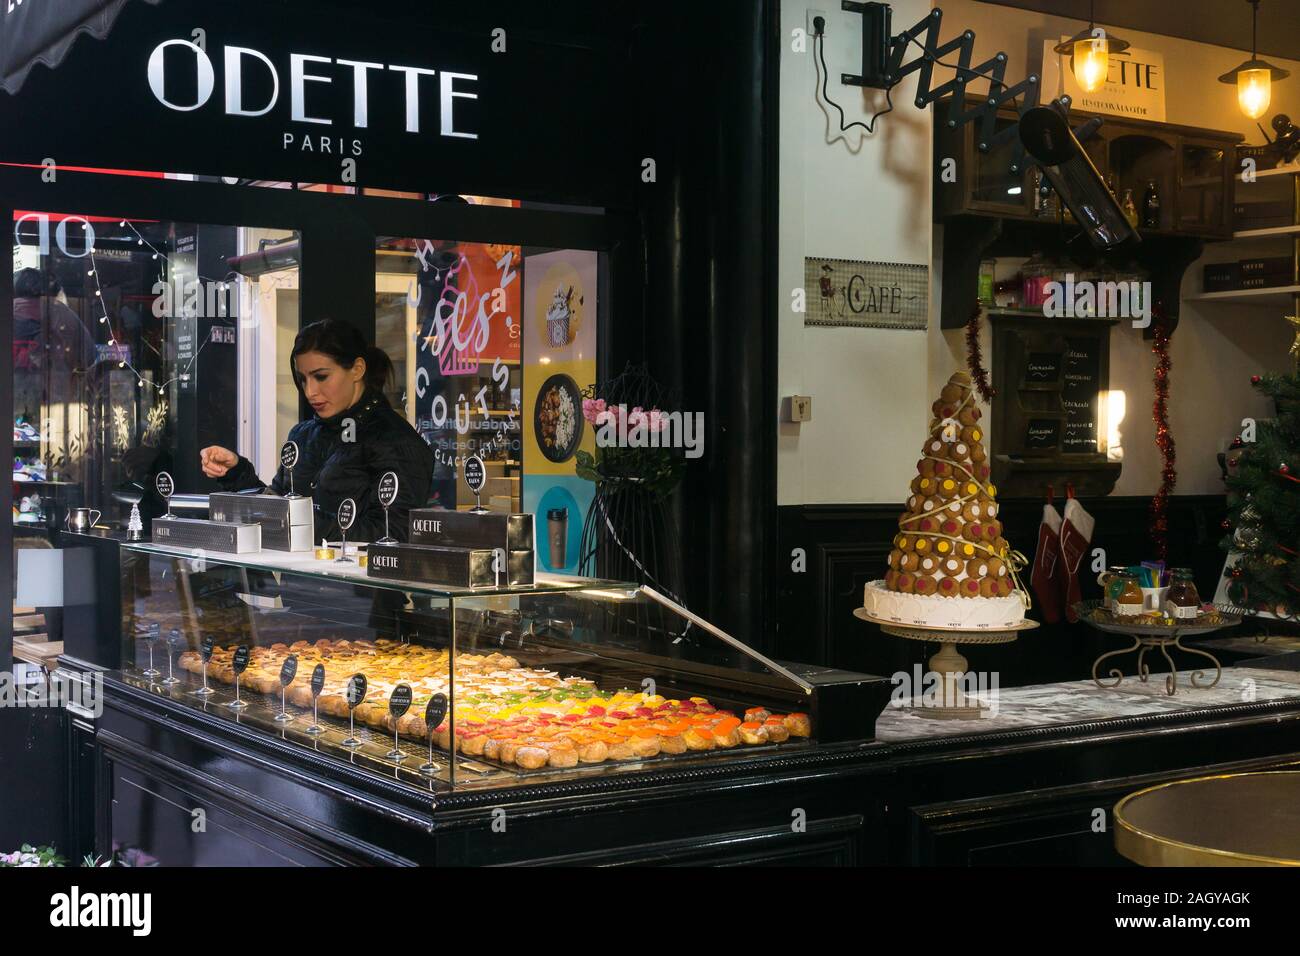 Paris Odette - pâte à choux shop dans la rue Montorgueil, dans le 2ème arrondissement de Paris, France, Europe. Banque D'Images